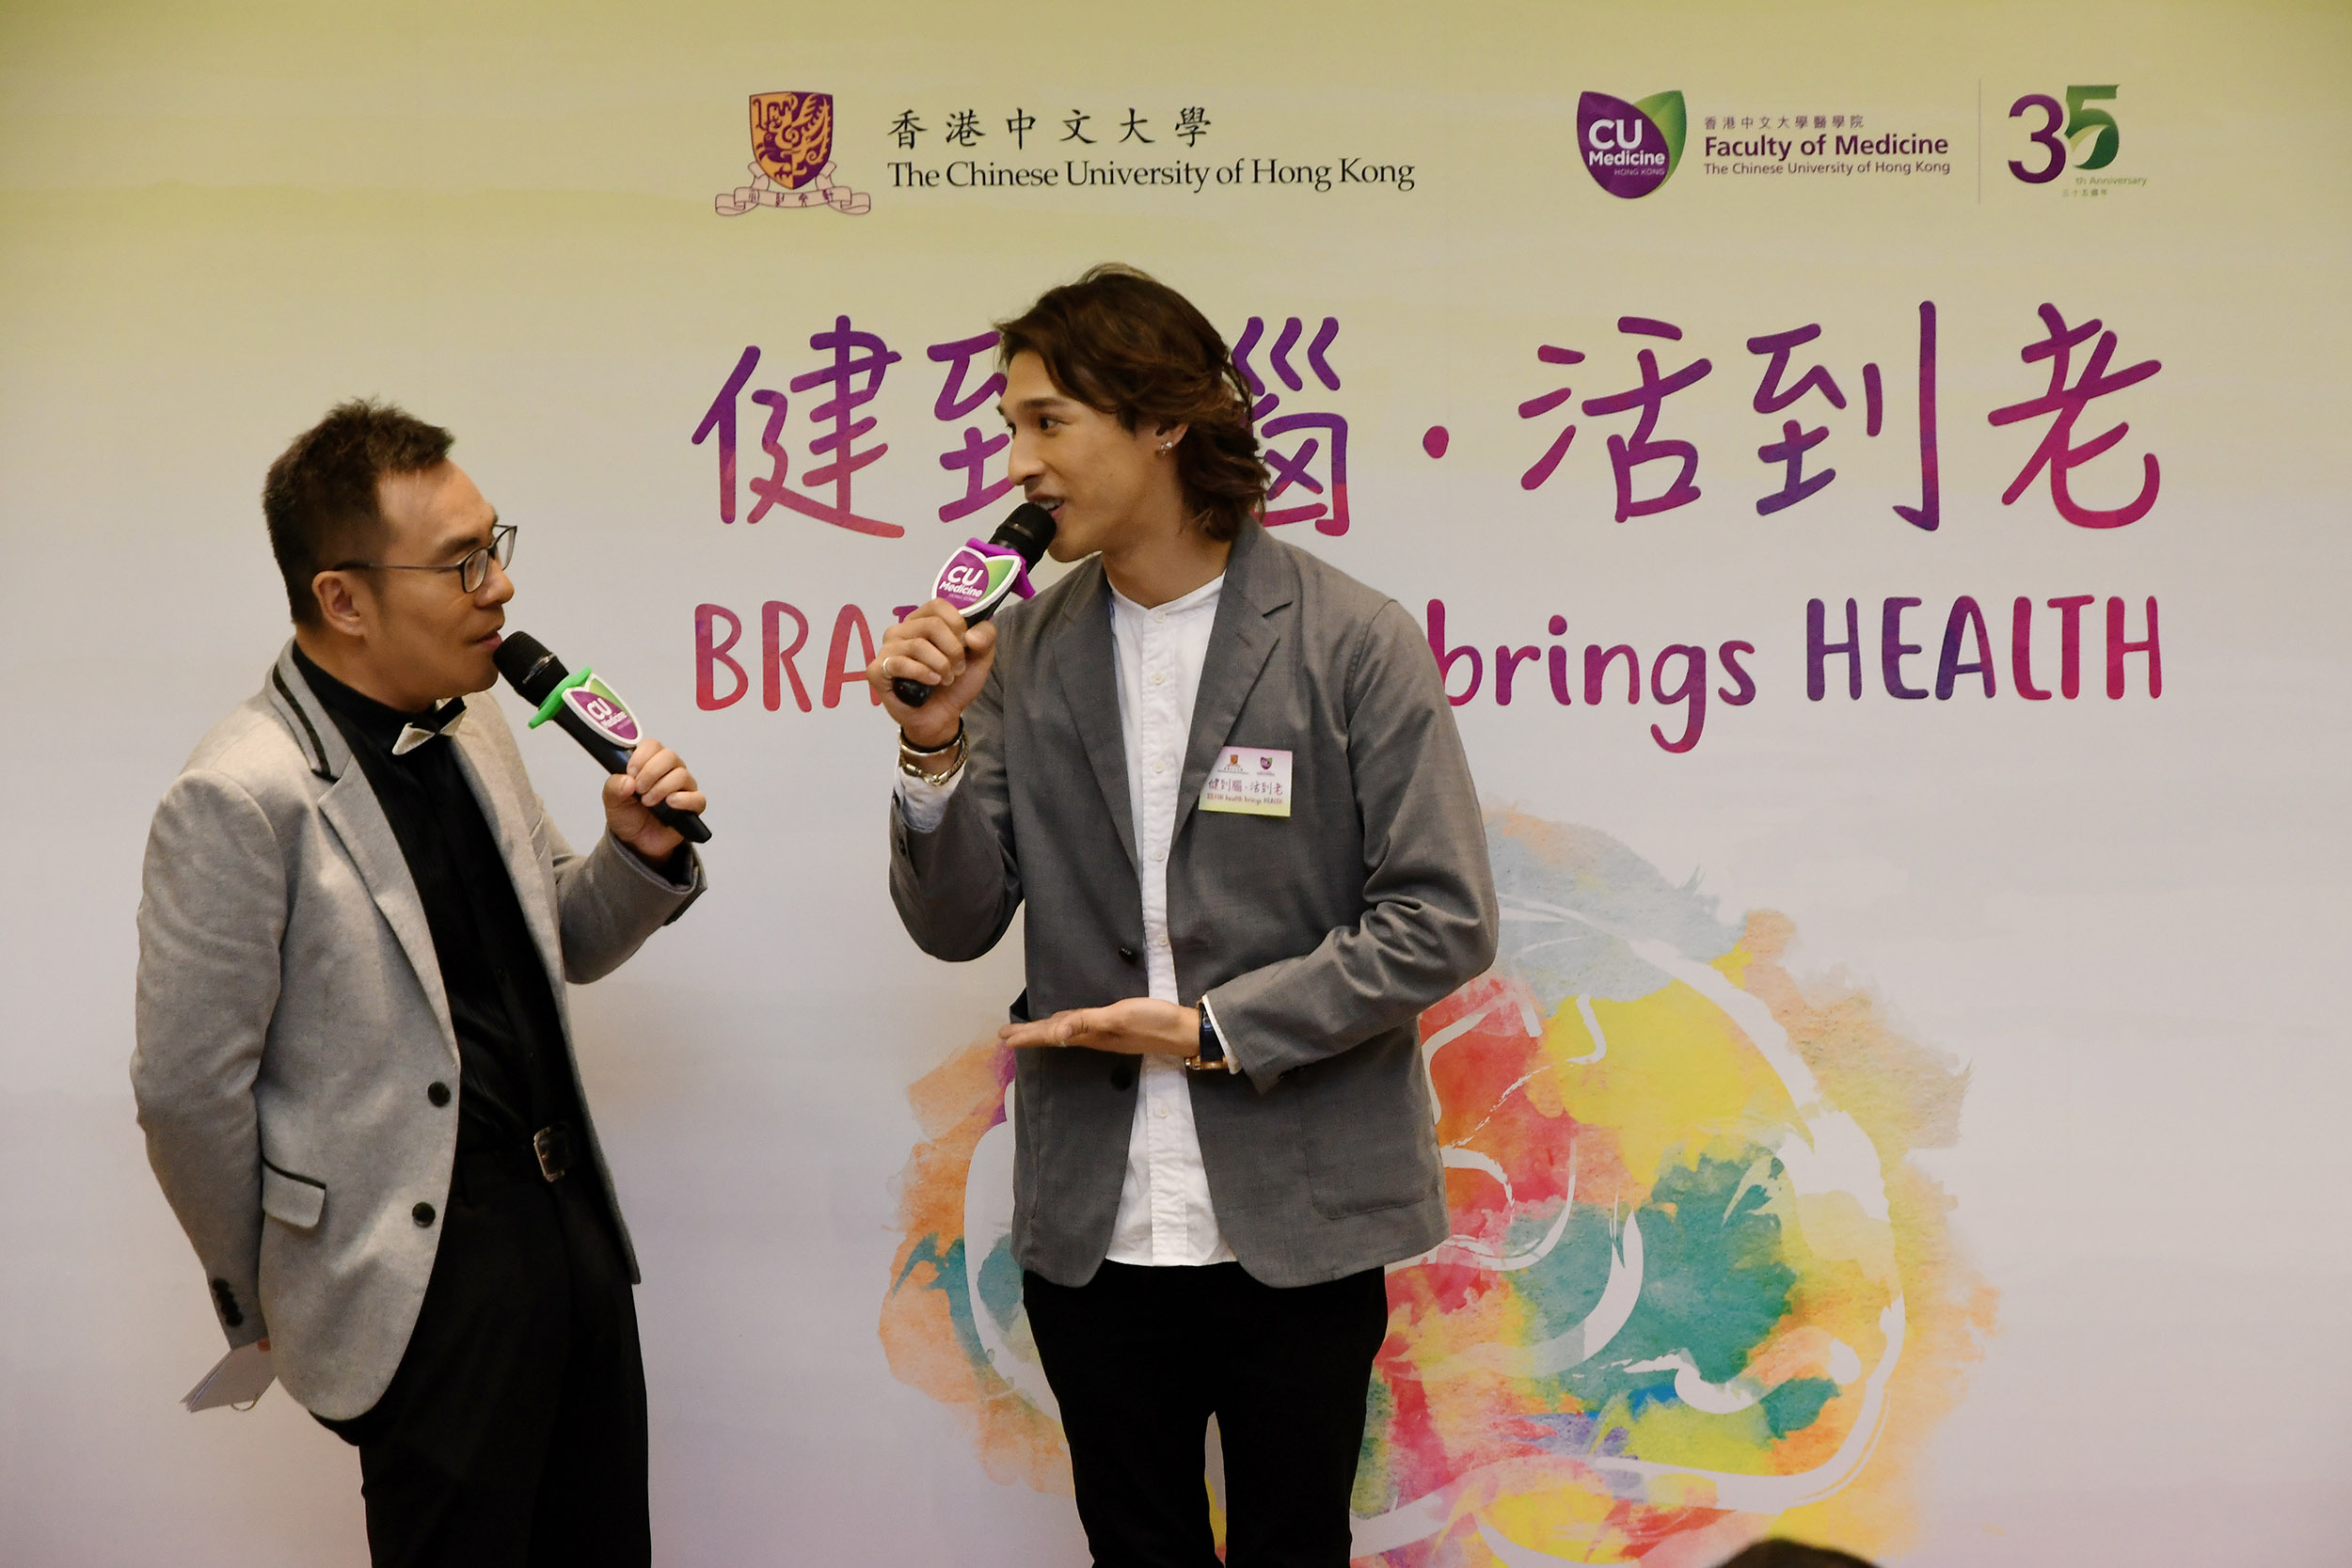 香港艺人黄又南先生爸爸是认知障碍症患者，亦为研究计划首位参加者。